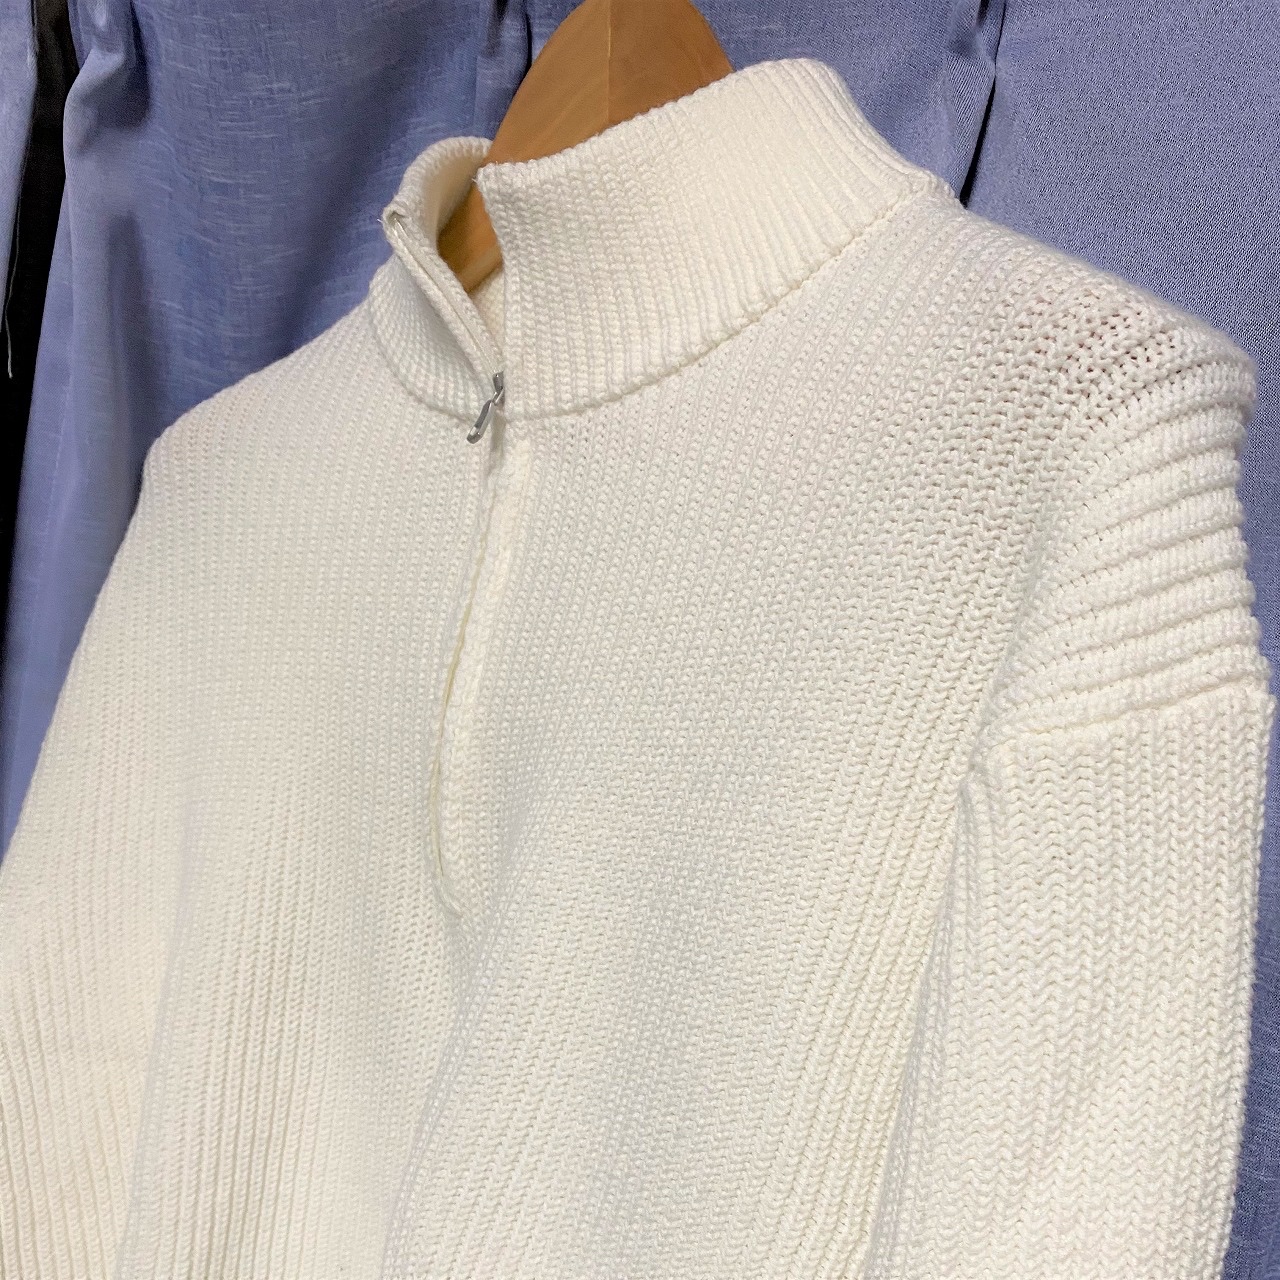 ユニクロのウォッシャブルミドルゲージハーフジップセーターはトレンドとベーシックを併せ持つ良品 服ログ